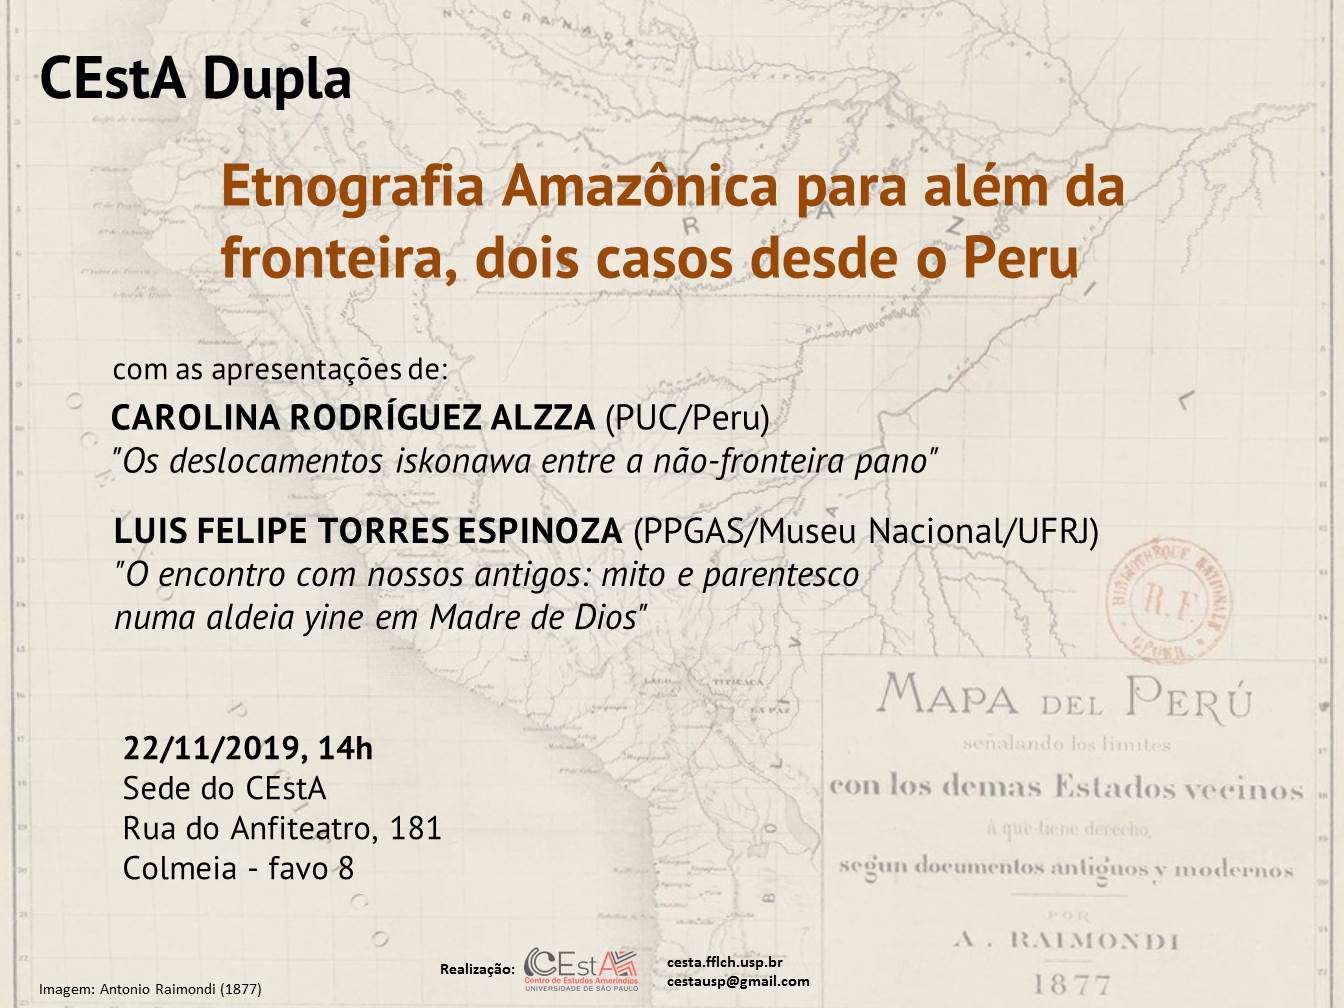 CEstA Dupla "Etnografia Amazônica para além da fronteira, dois casos desde o Peru"